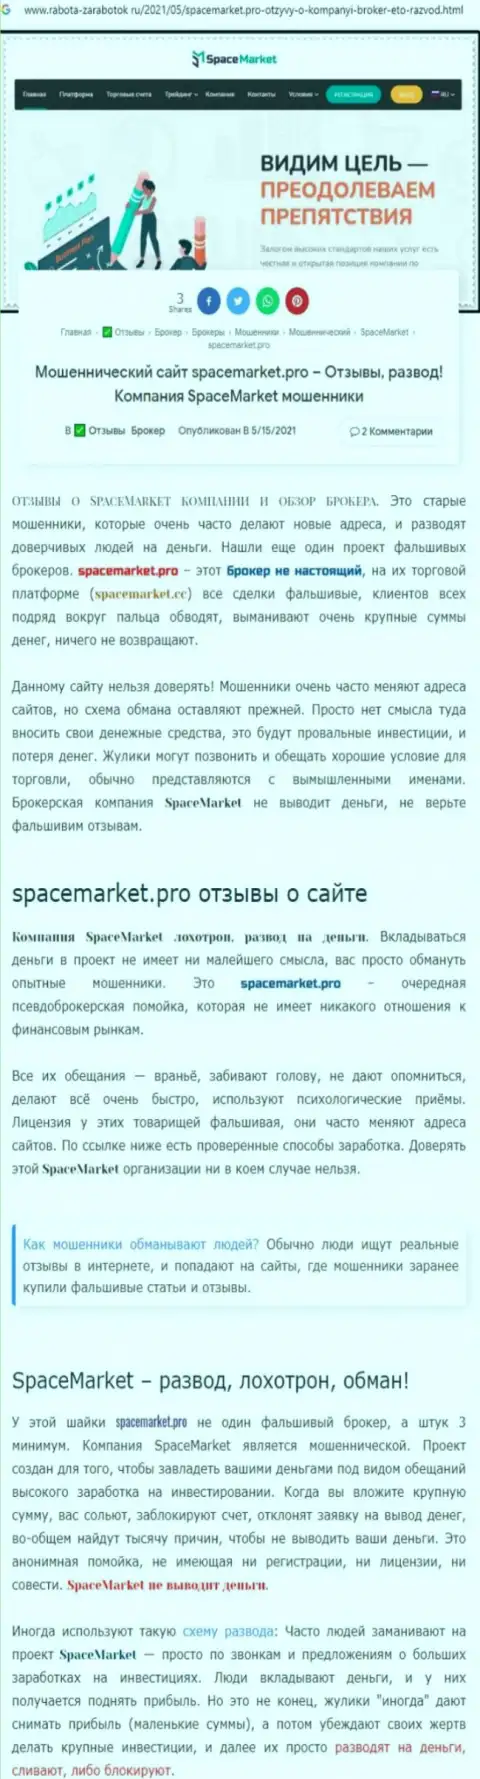 Лохотронщики SpaceMarket Pro нагло лишают денег - БУДЬТЕ ОЧЕНЬ ВНИМАТЕЛЬНЫ (обзор деятельности)